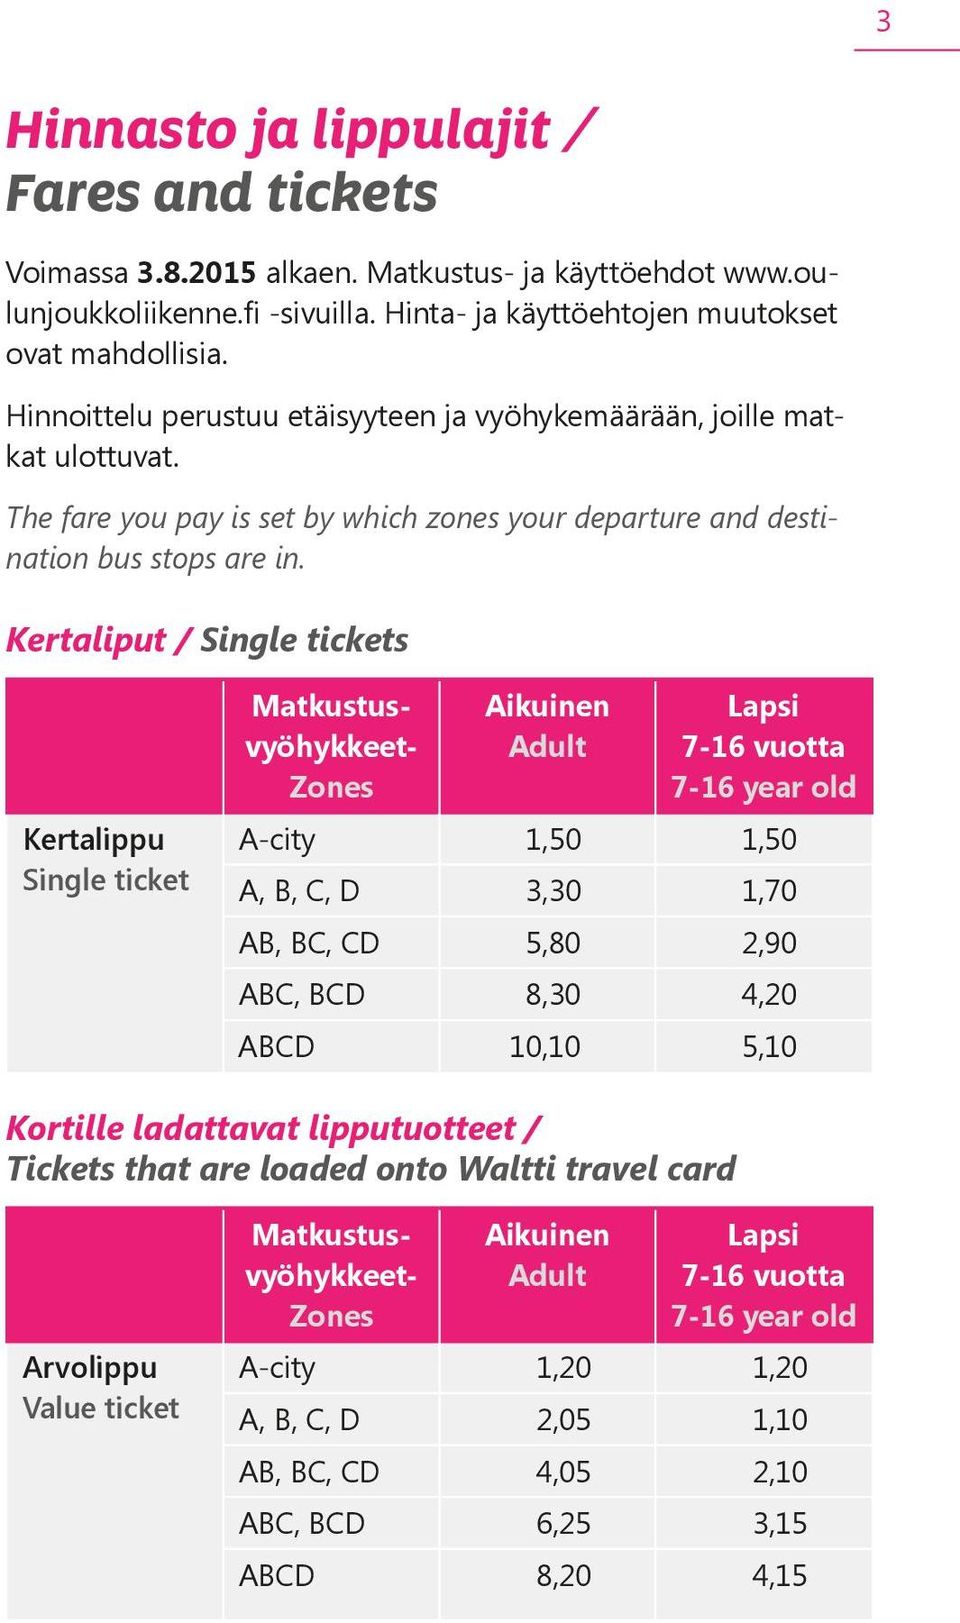 Kertaliput / Single tickets Kertalippu Single ticket Matkustus- vyöhykkeet- Zones Aikuinen Adult Lapsi 7-16 vuotta 7-16 year old A-city 1,50 1,50 A, B, C, D 3,30 1,70 AB, BC, CD 5,80 2,90 ABC, BCD